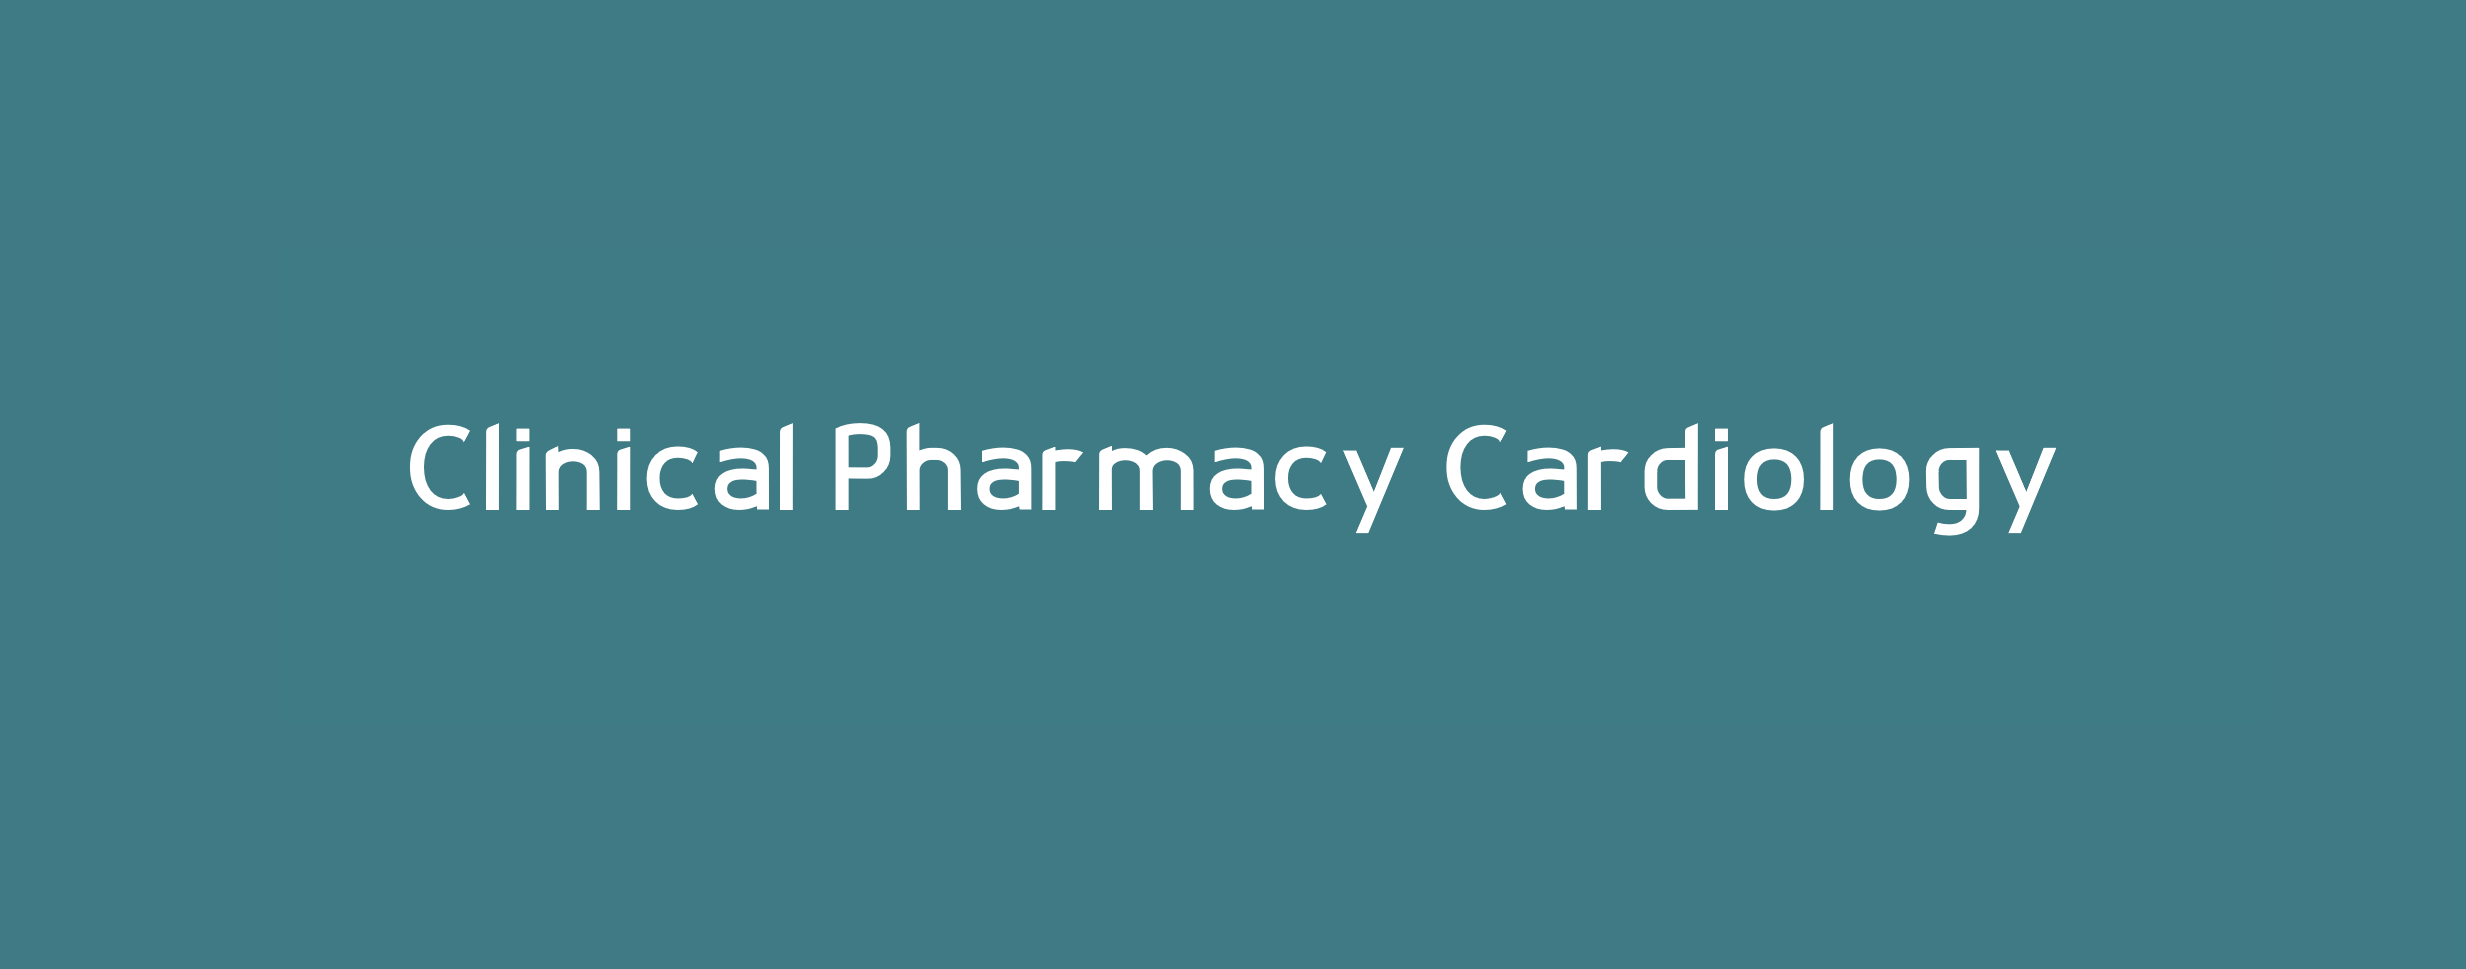 Clinical Pharmacy Cardiology 